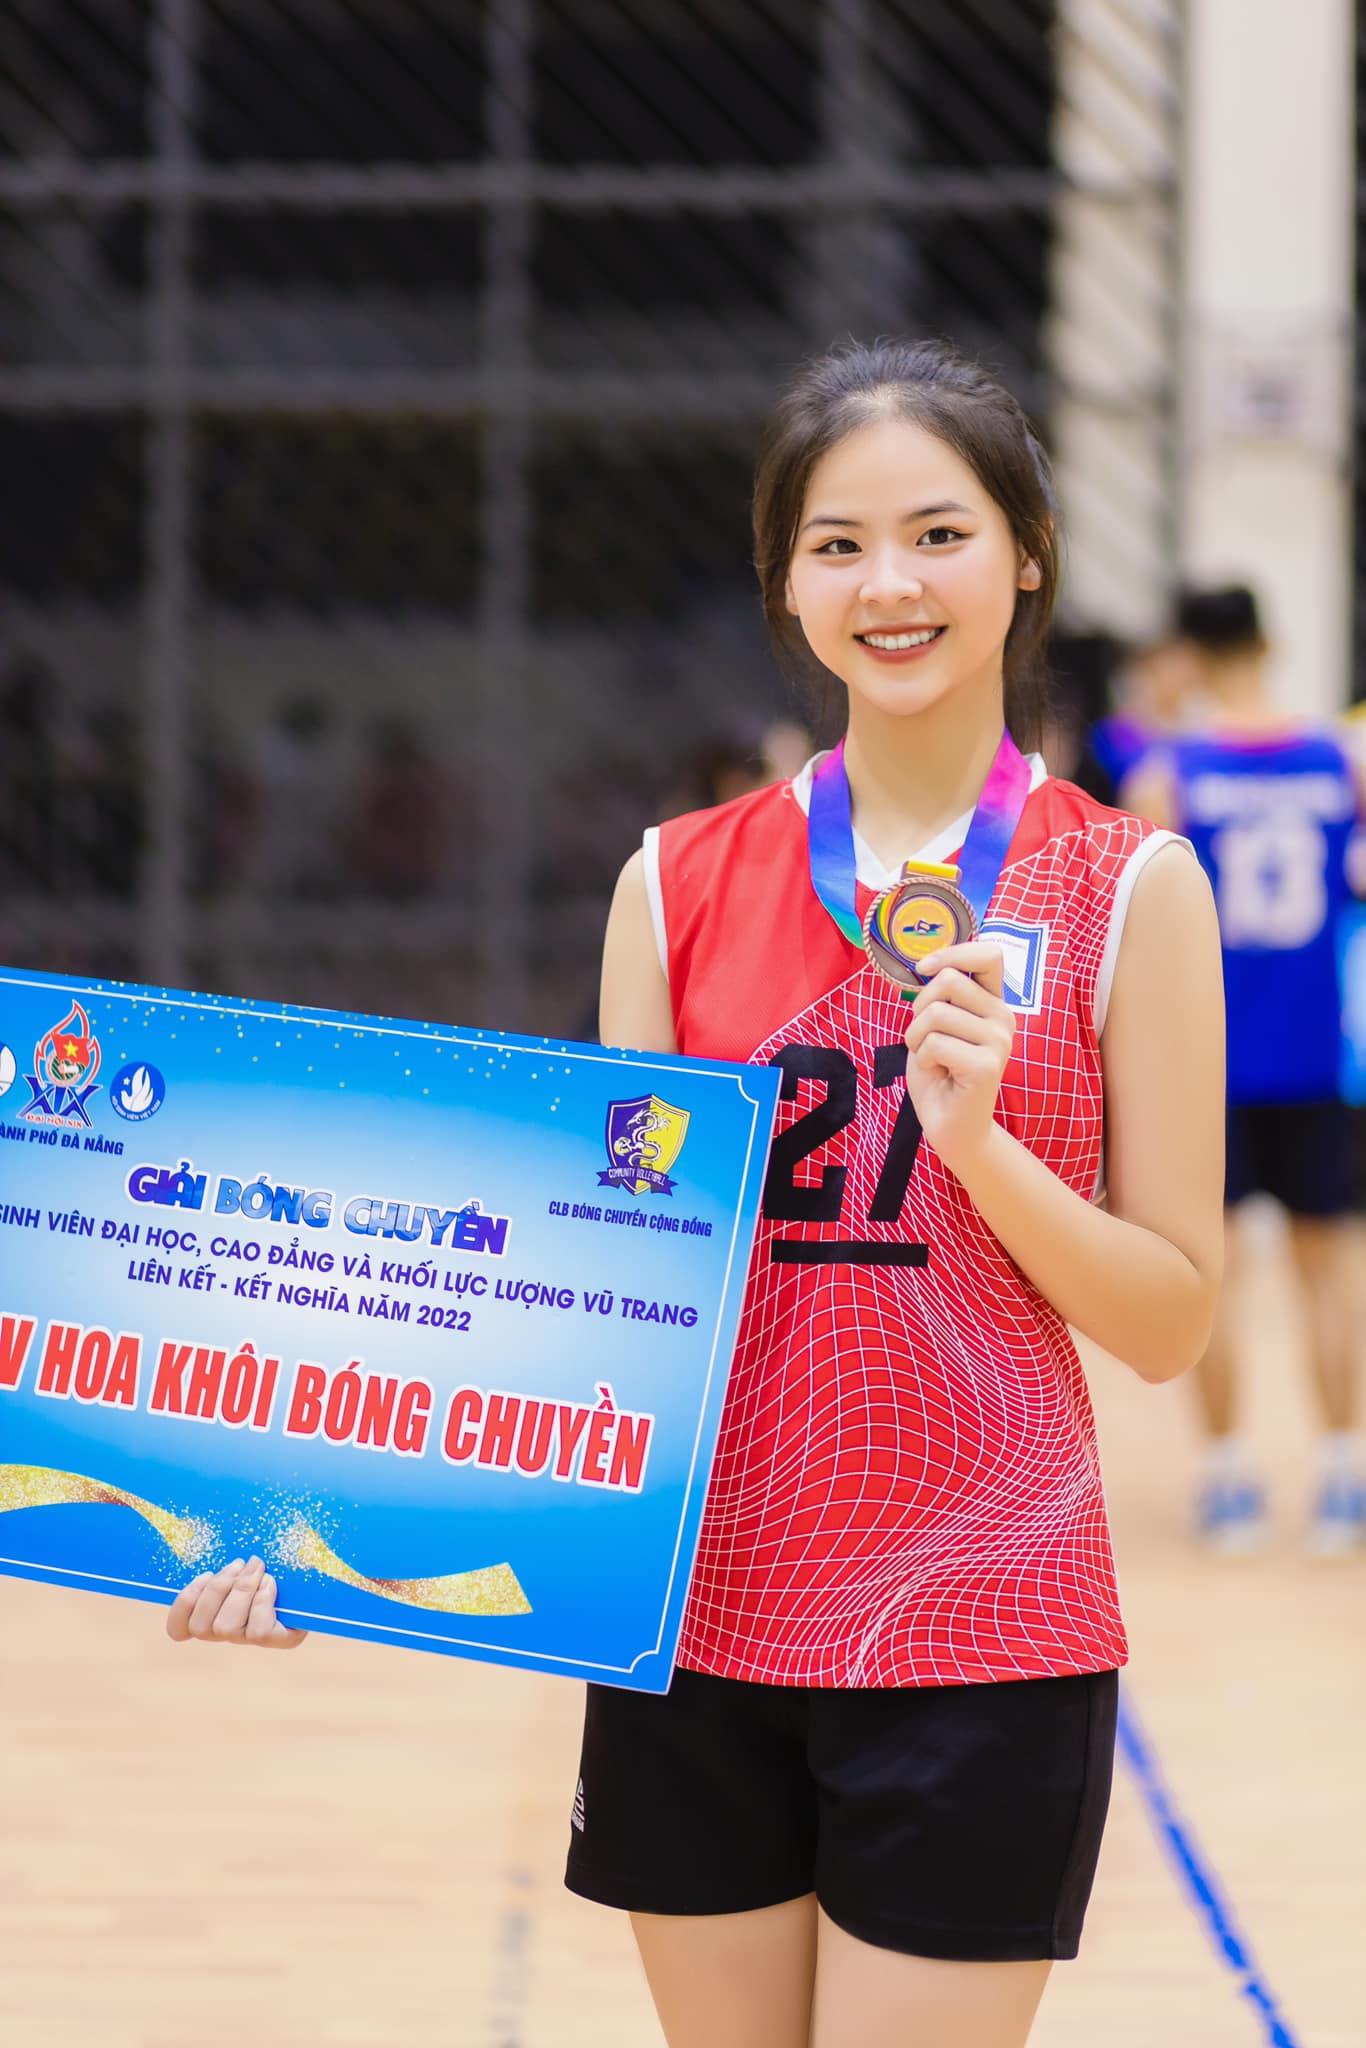 Hoa khôi bóng chuyền vào thẳng chung kết Miss World Vietnam 2023: &quot;Tôi muốn là phiên bản tốt hơn&quot; - Ảnh 7.